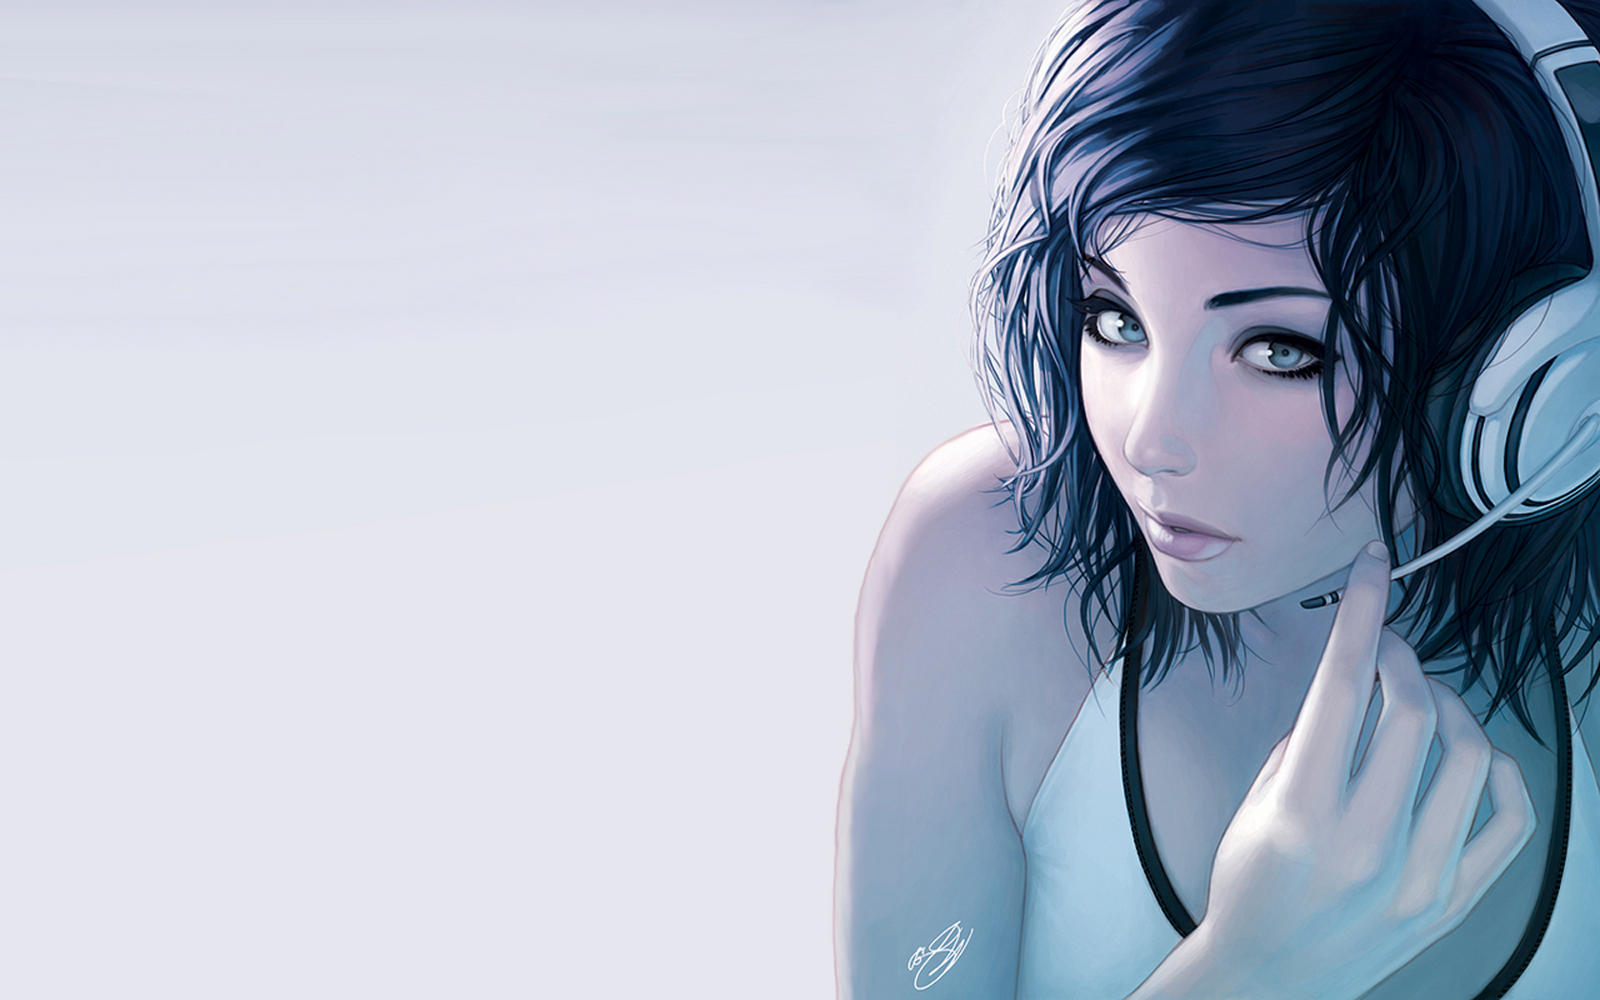 hochauflösende anime wallpaper,haar,gesicht,blau,schönheit,schwarzes haar